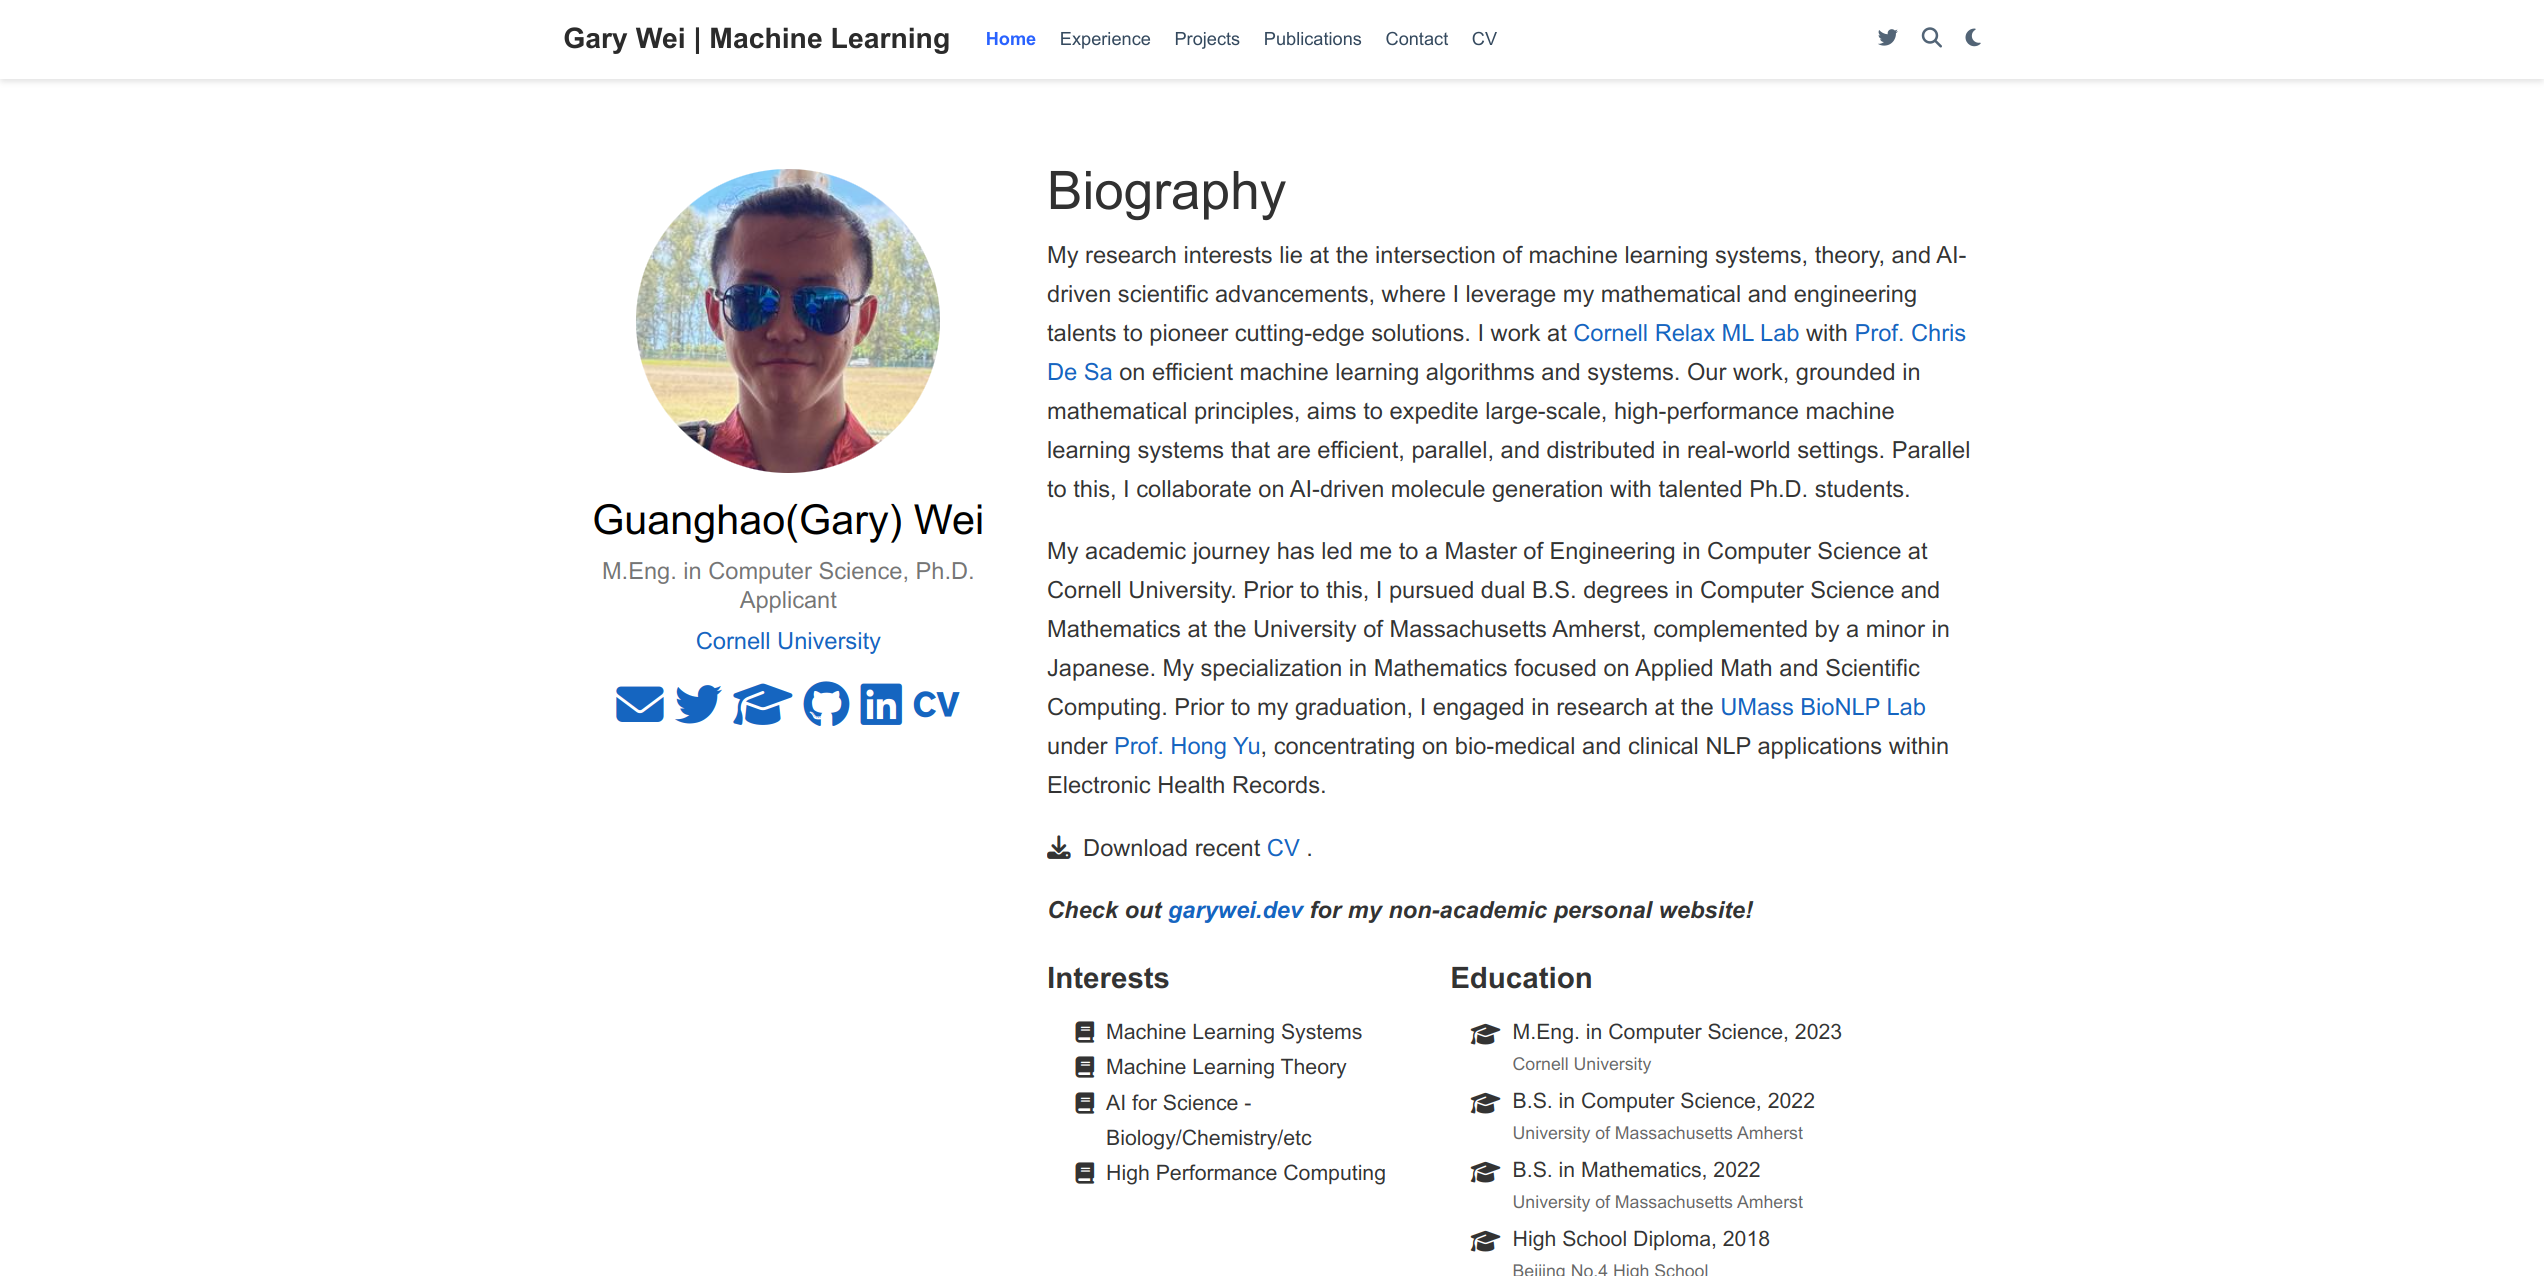 Academic Profile